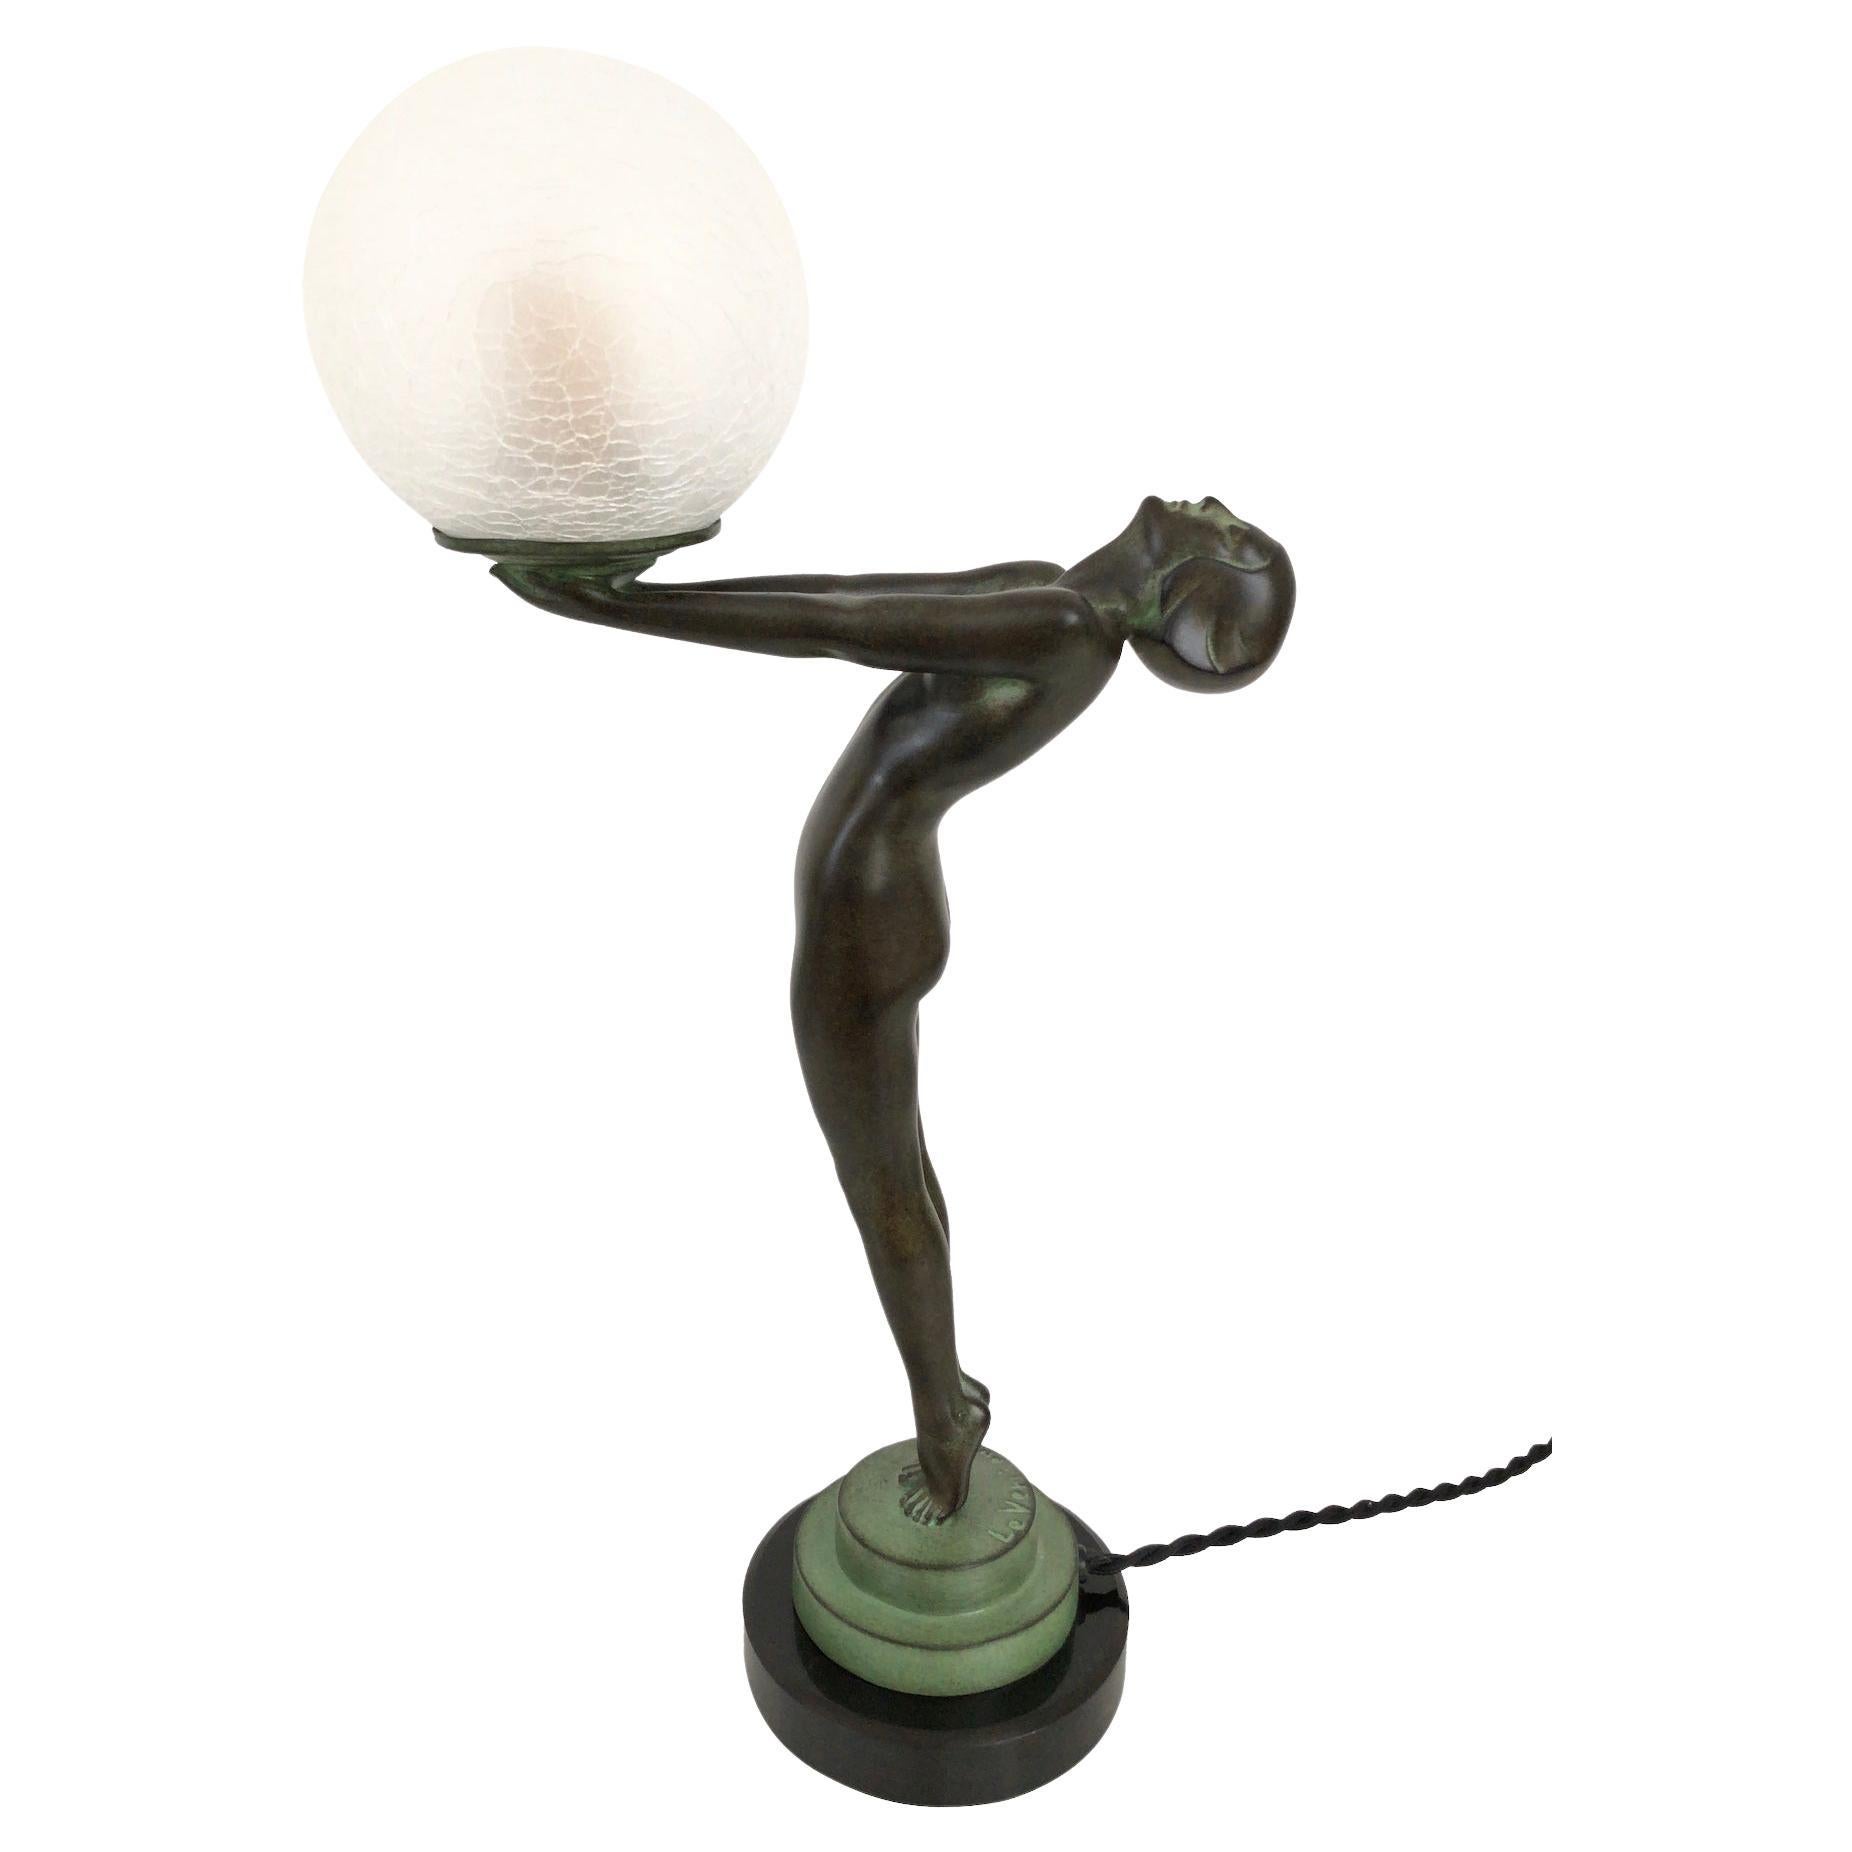 Clarté Sculpture Lueur Lamp from the Important Art Deco Artist Max Le Verrier